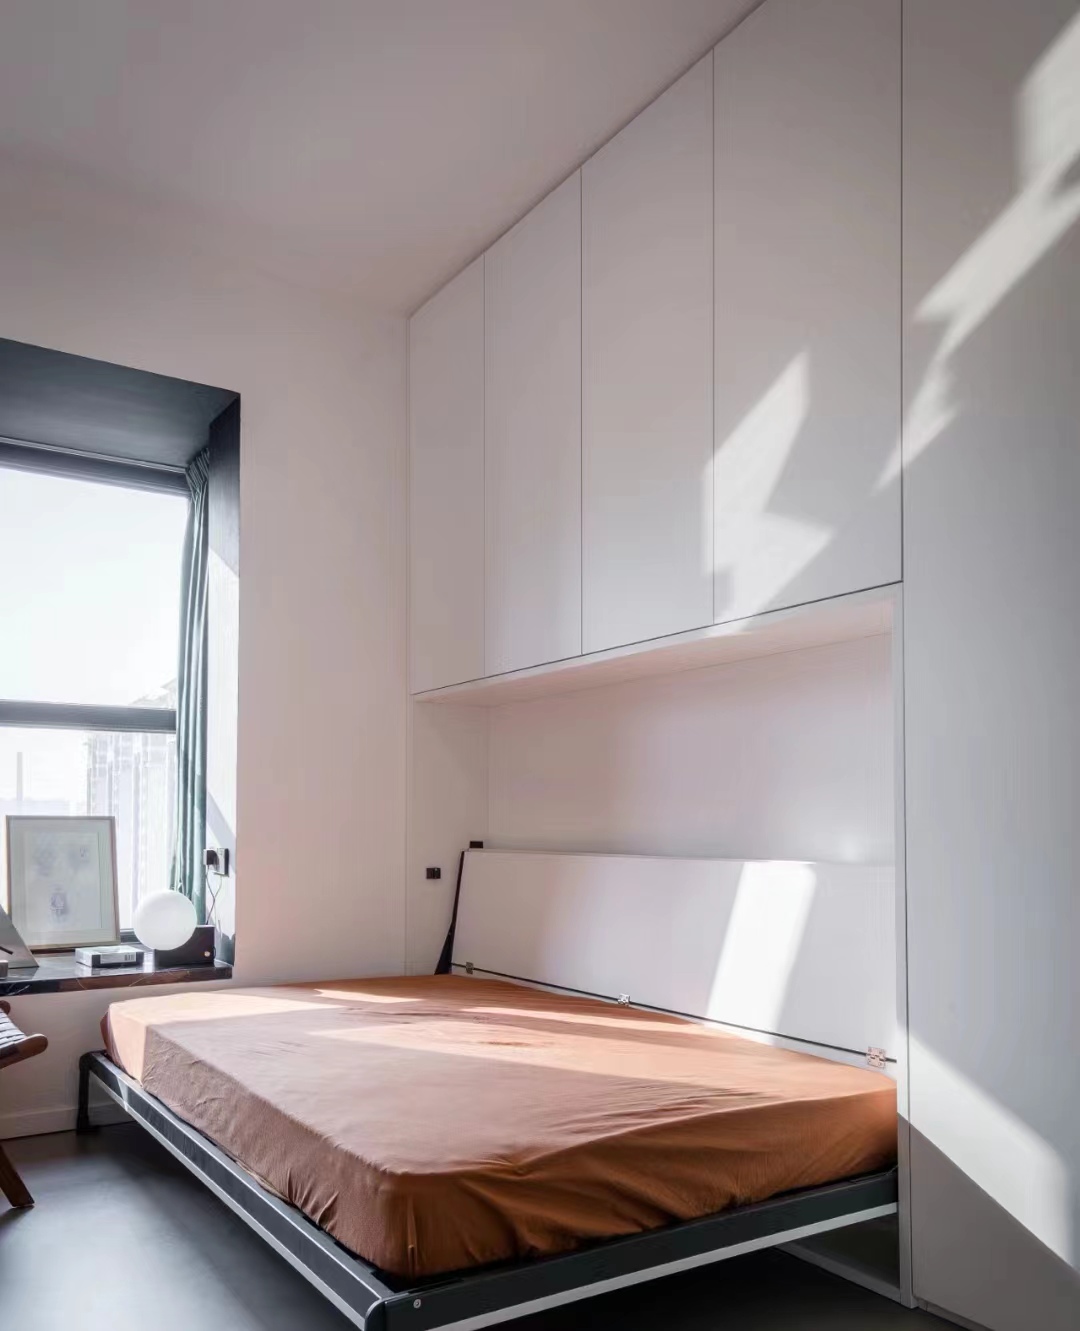 小房间如何装修?卧室小于10㎡ 的3种设计方案,超实用!